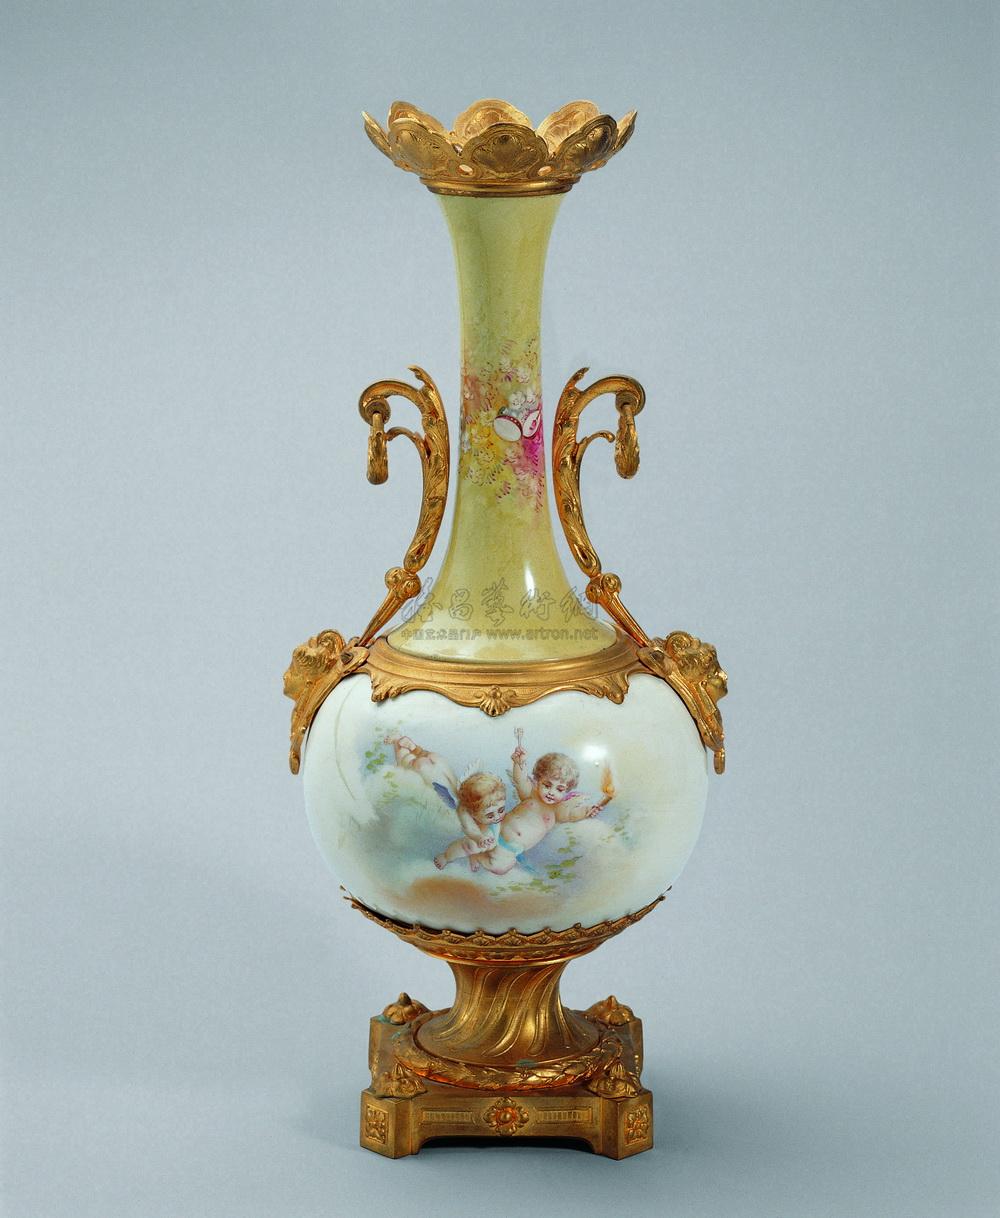 弗朗索瓦花瓶图片